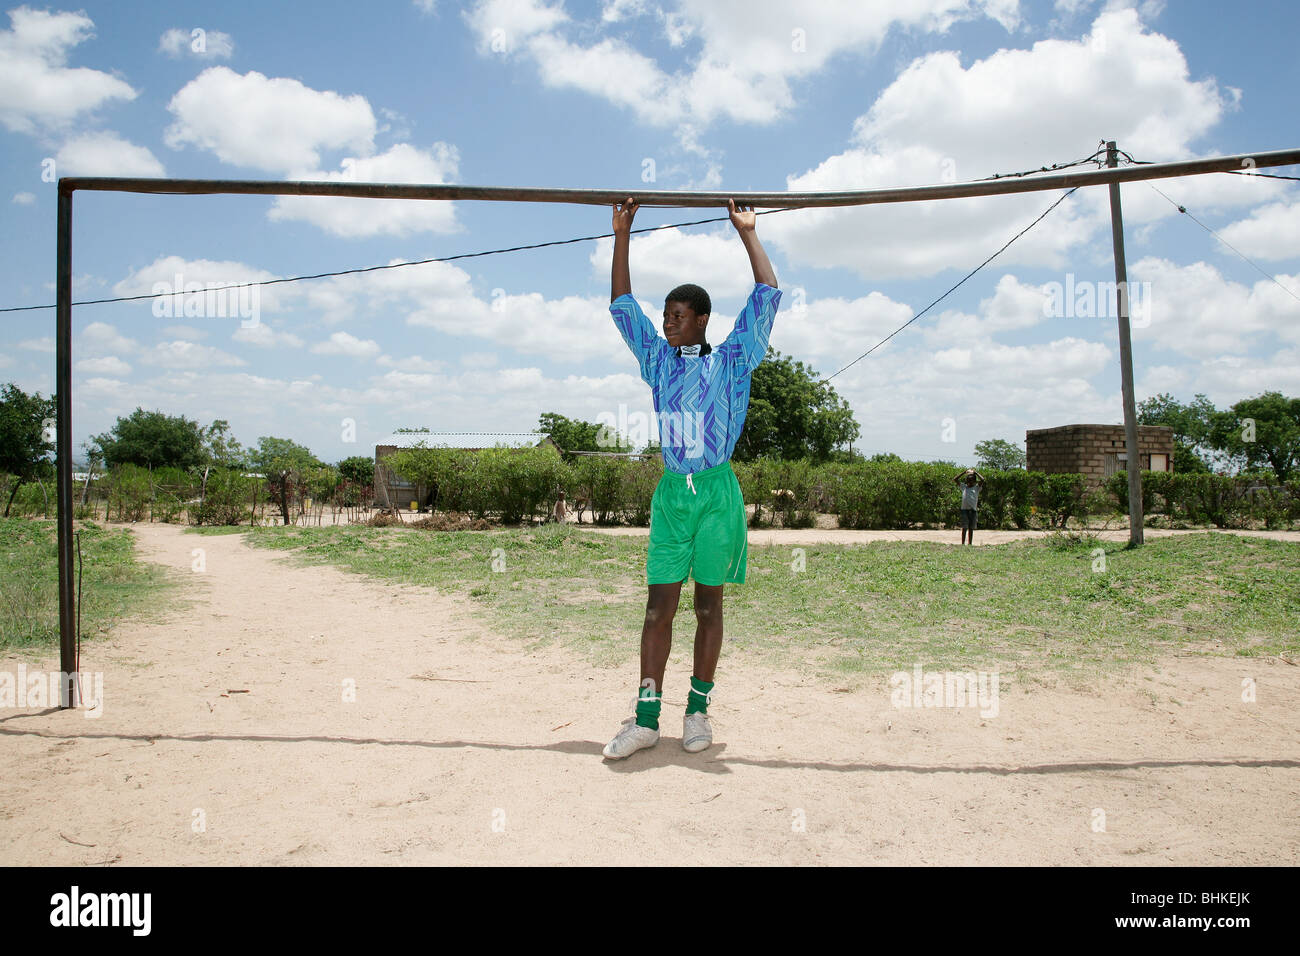 Eine junge schwarze südafrikanische junge Stand in einem Fußball-Ziel-Mund mit den Händen berühren die Querstange auf die Fußball-Schule Stockfoto